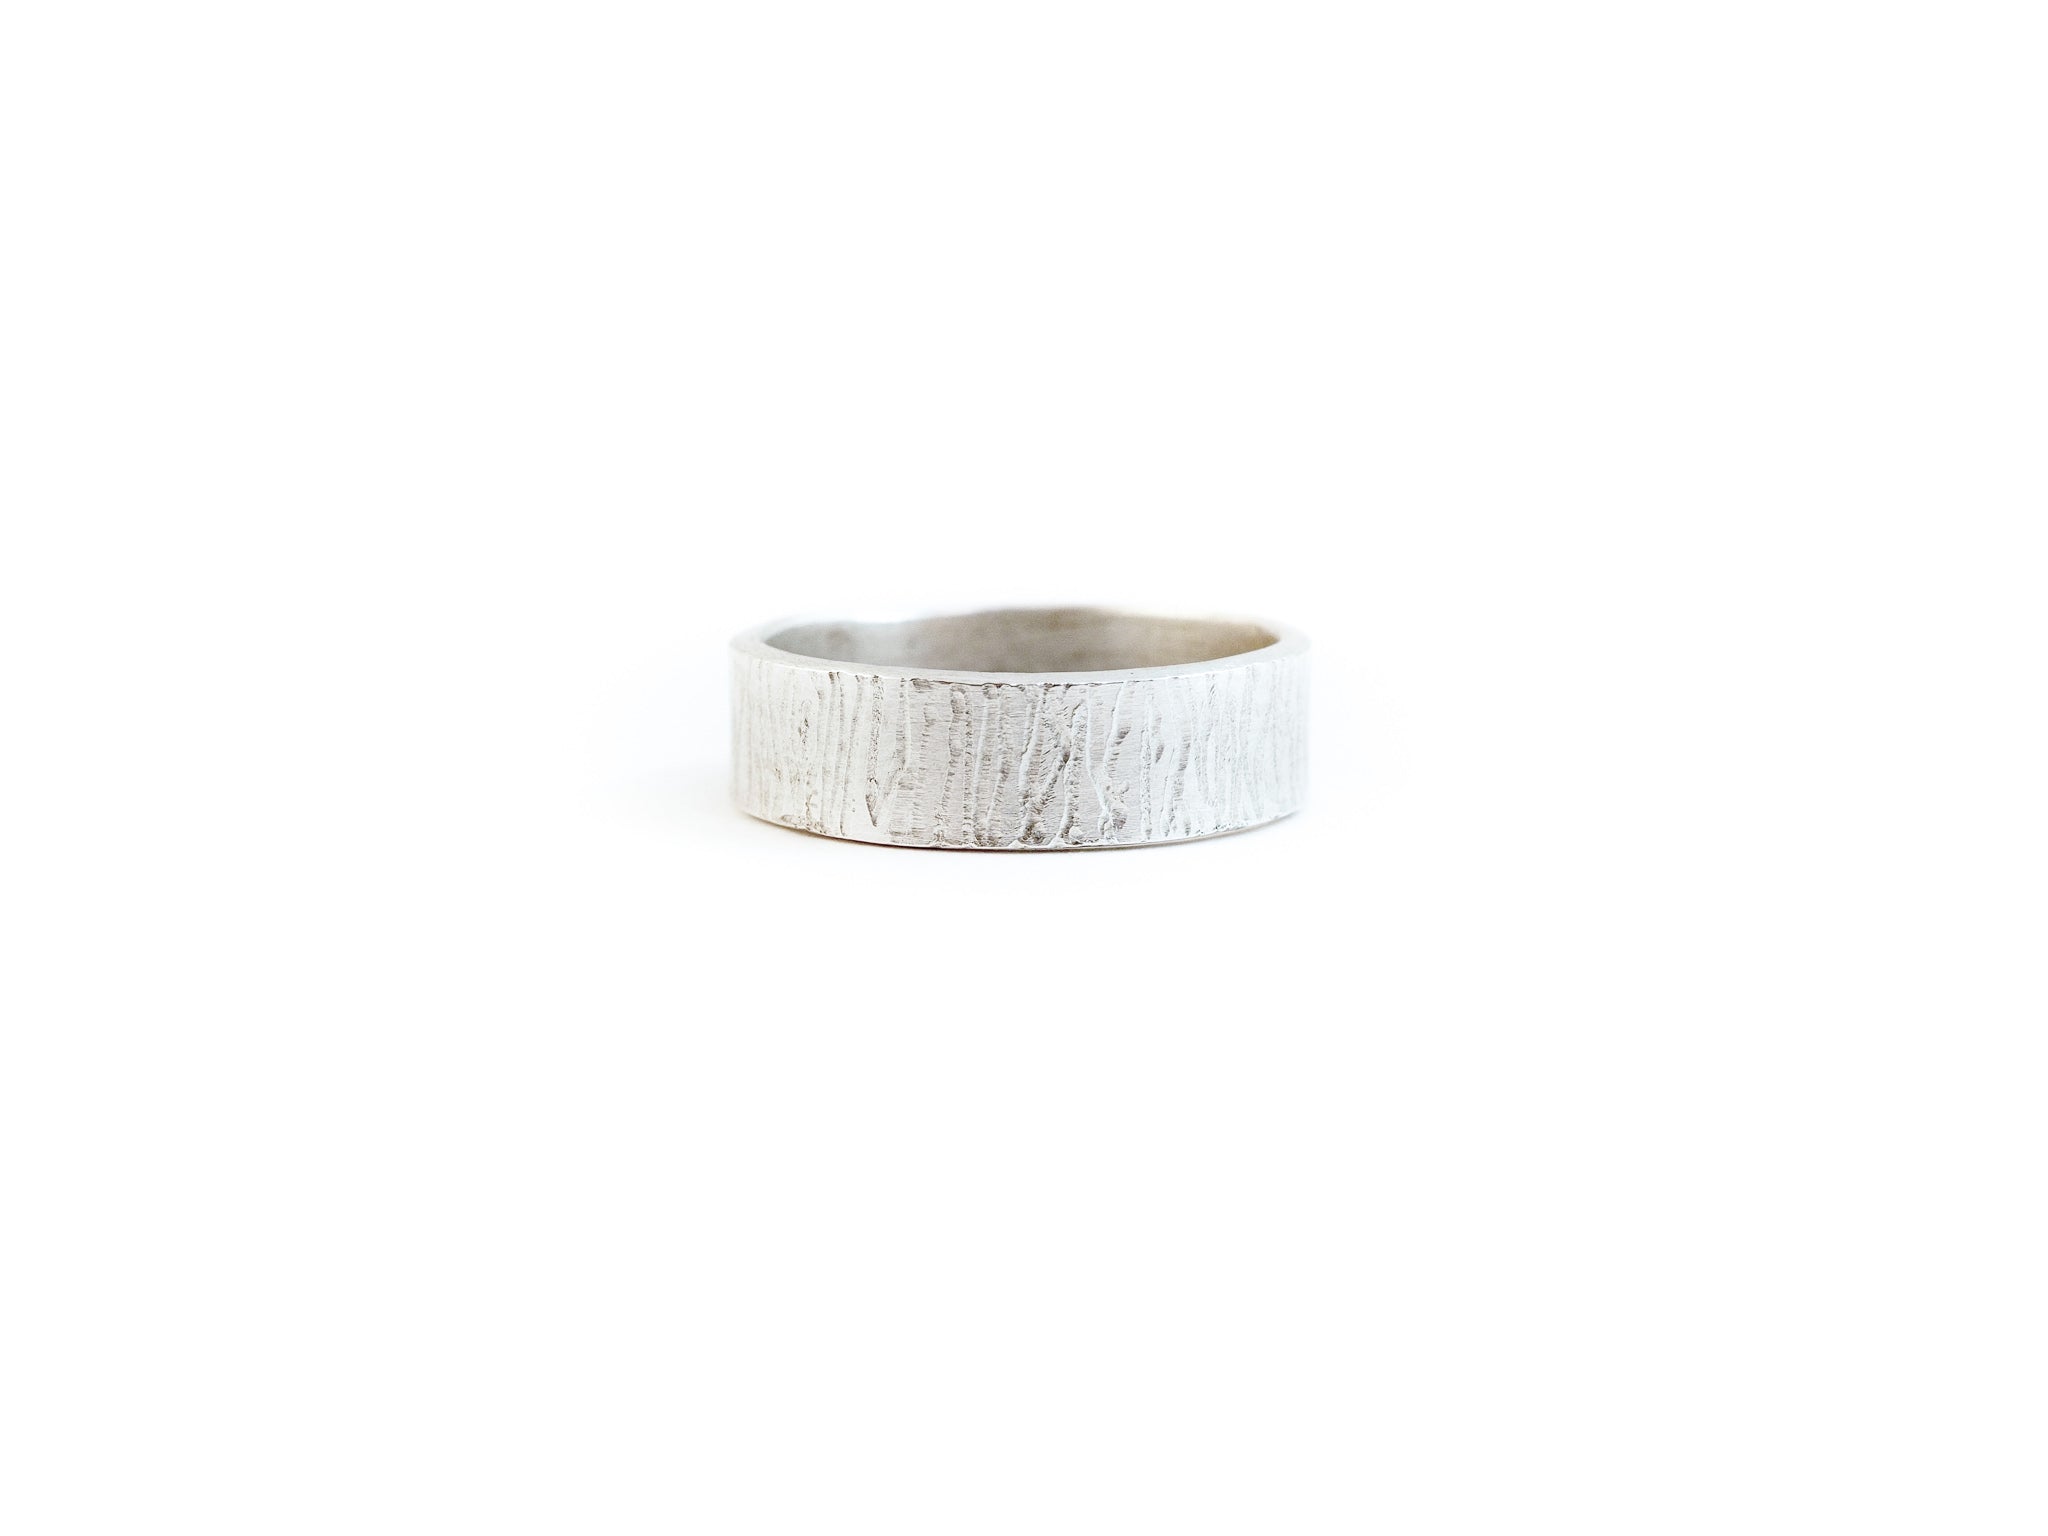 Bark texture ring handmade in tofino bc